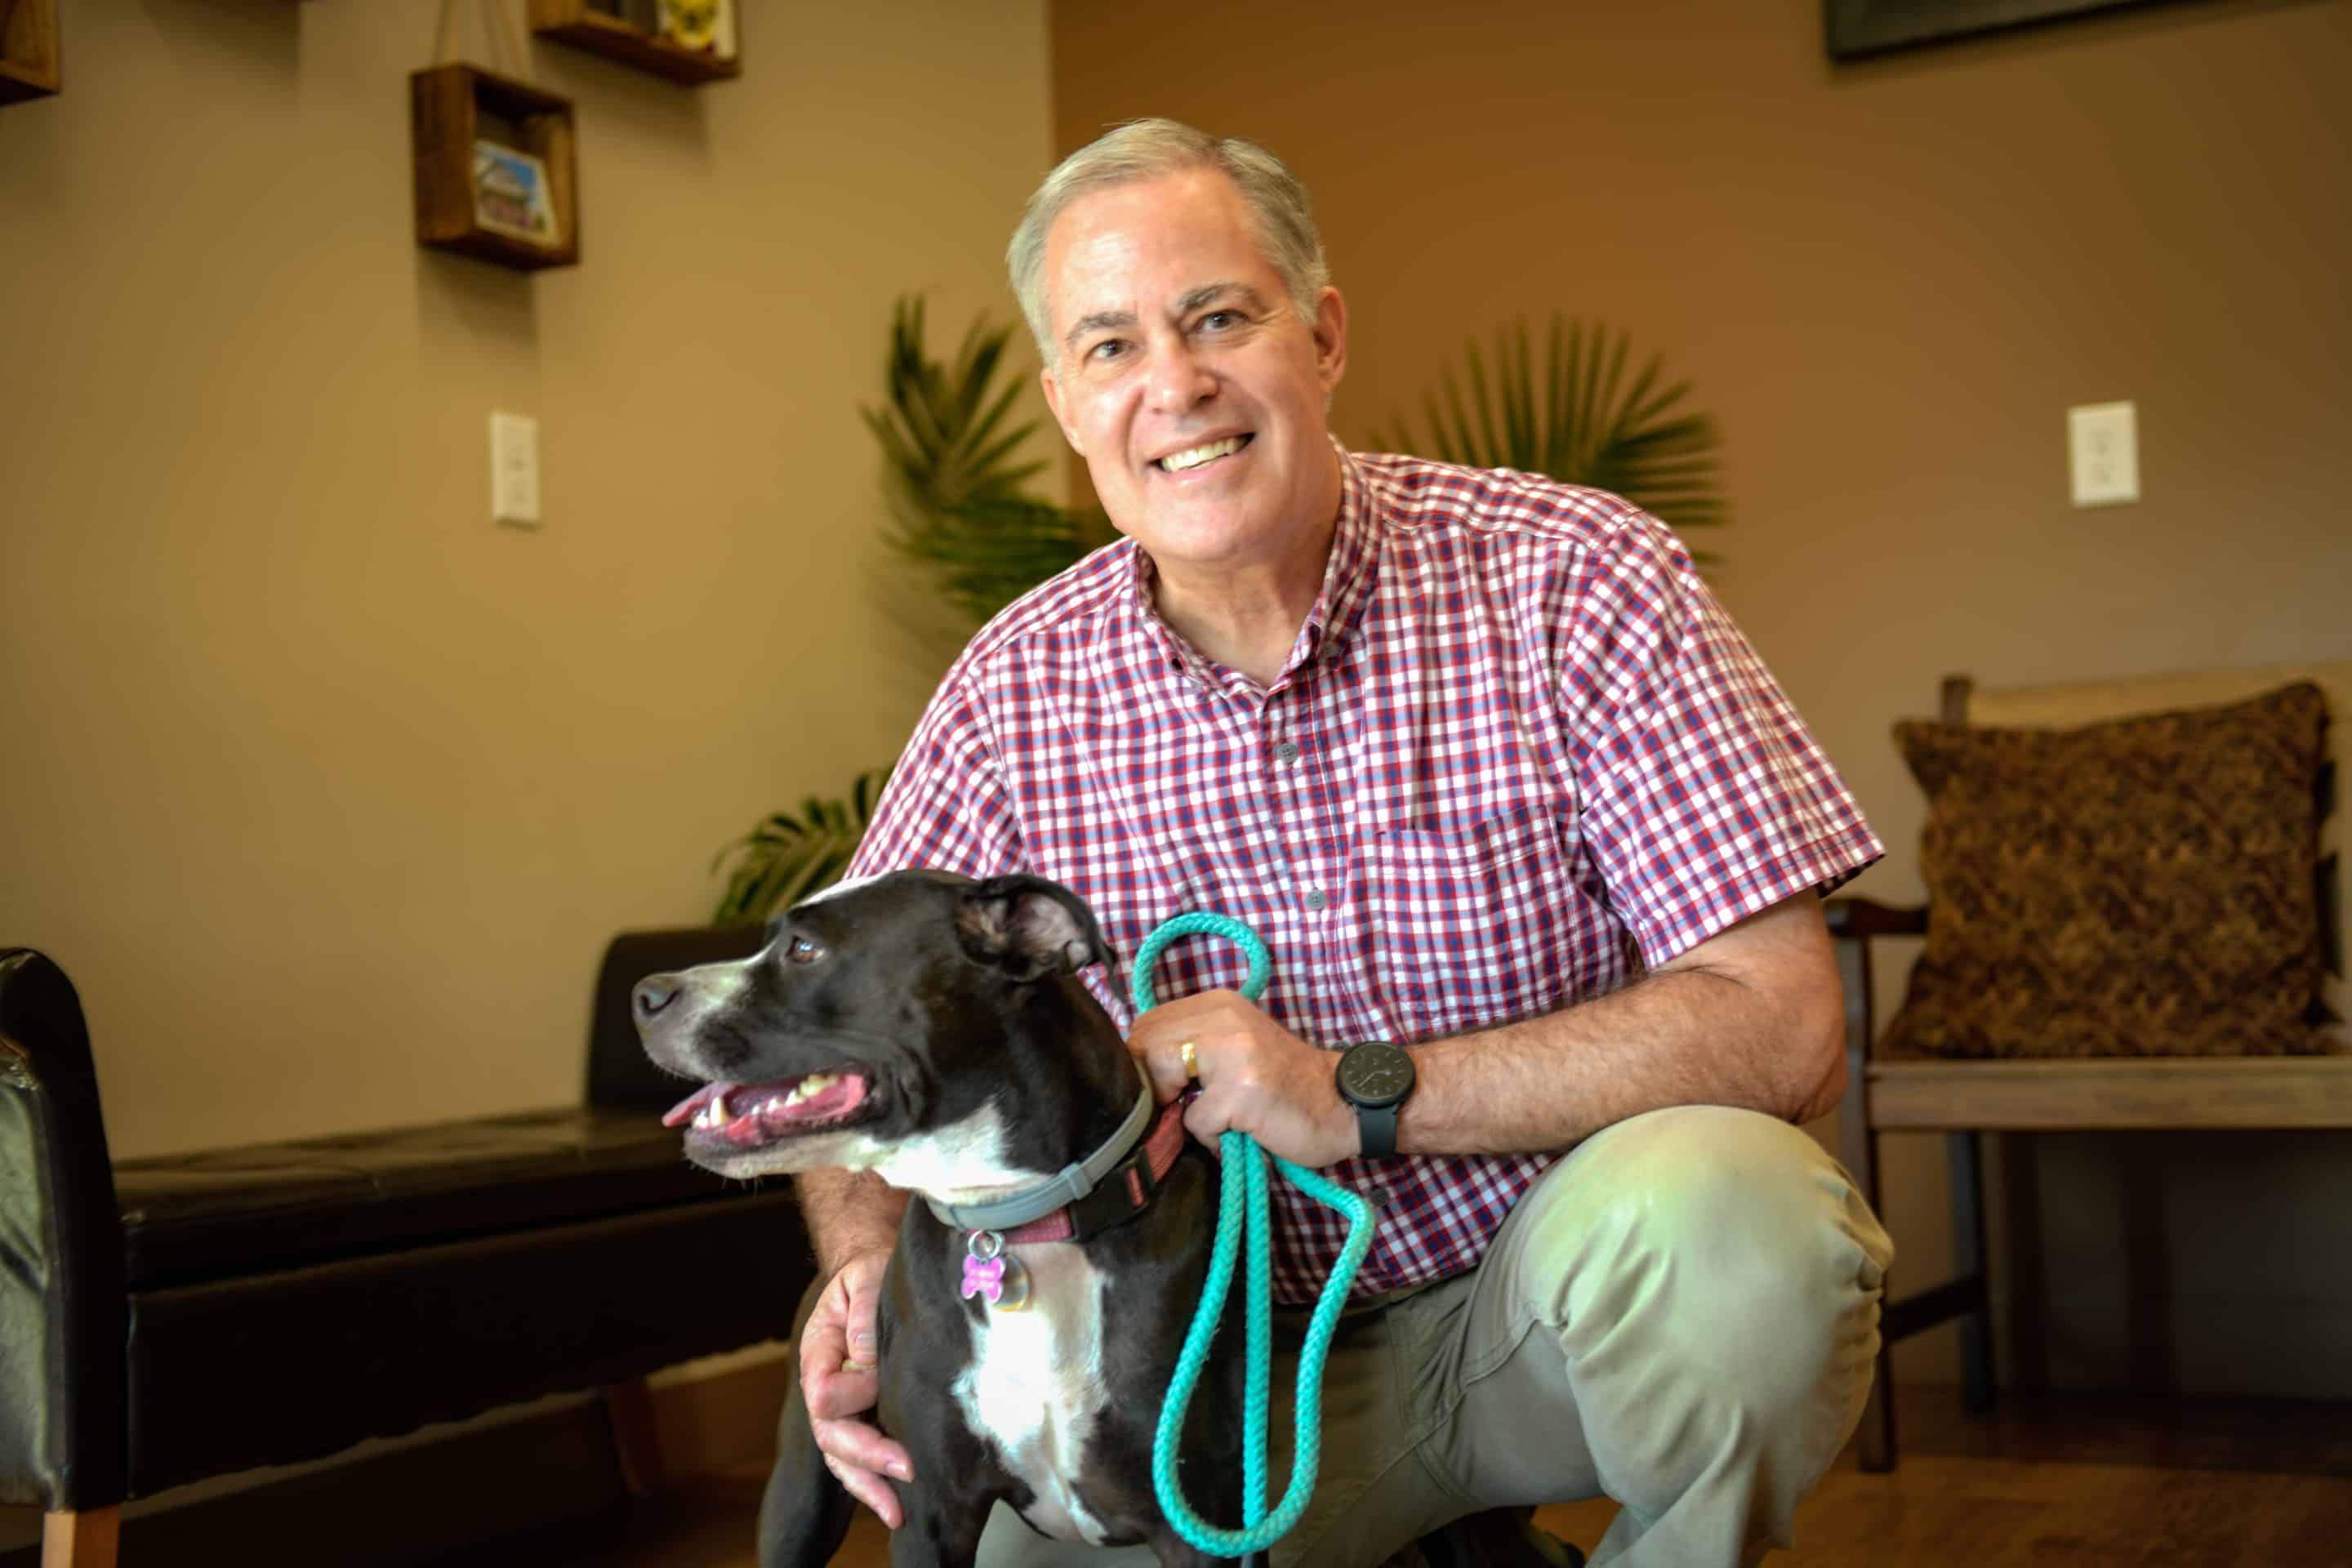 Dr. Stoneman DVM, at Bluegrass Veterinary Hospital in Gallatin, TN